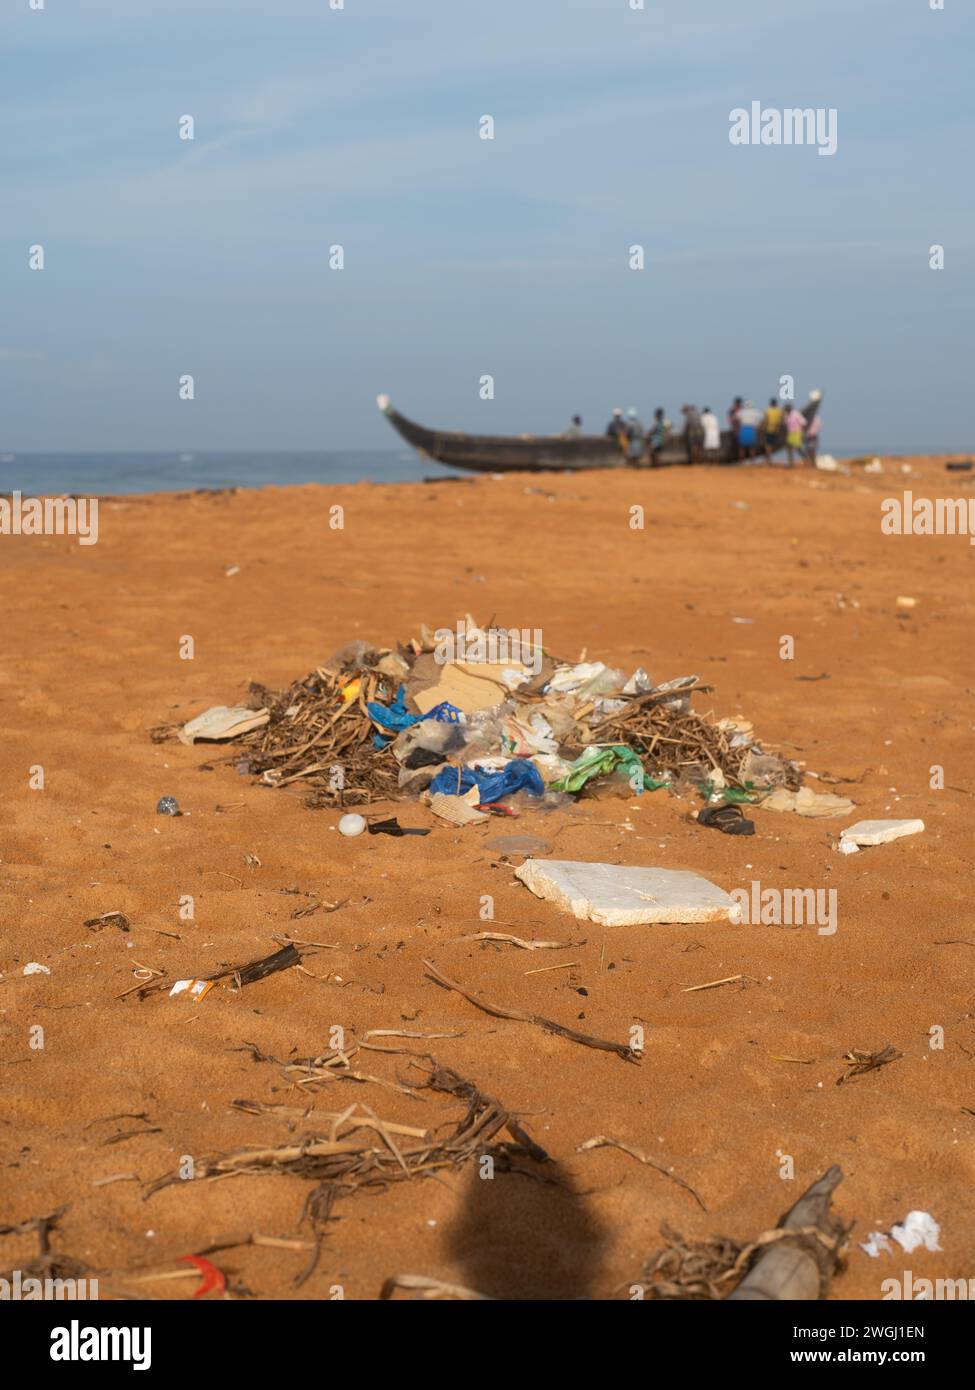 Basura en la playa. Cuestiones ecológicas en el mundo Foto de stock